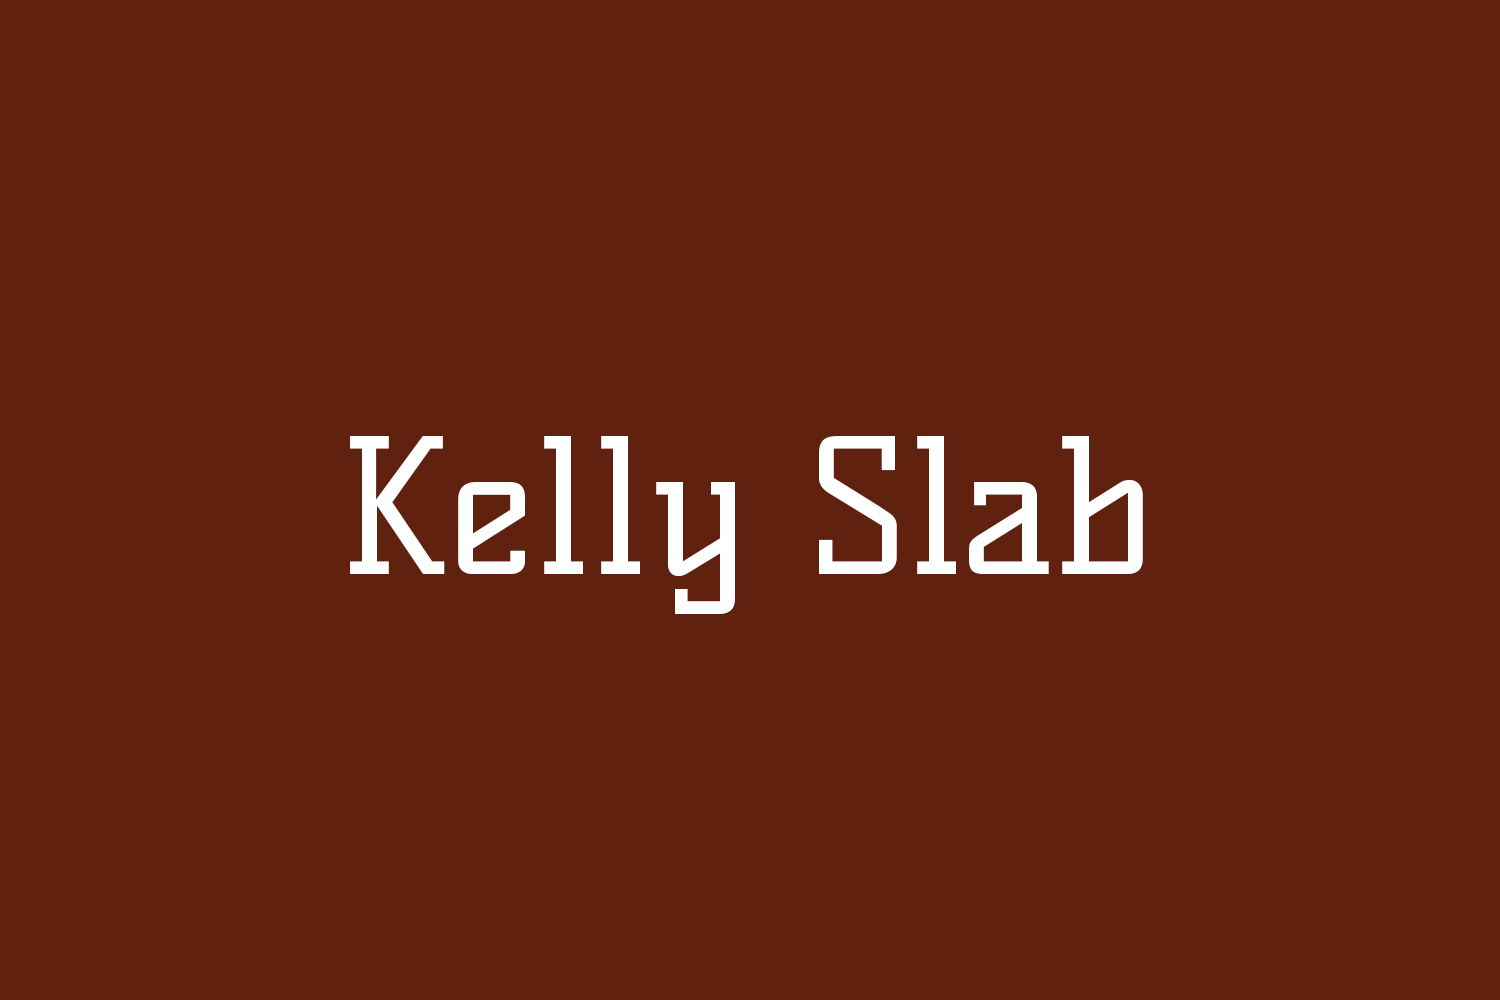 Kelly Slab